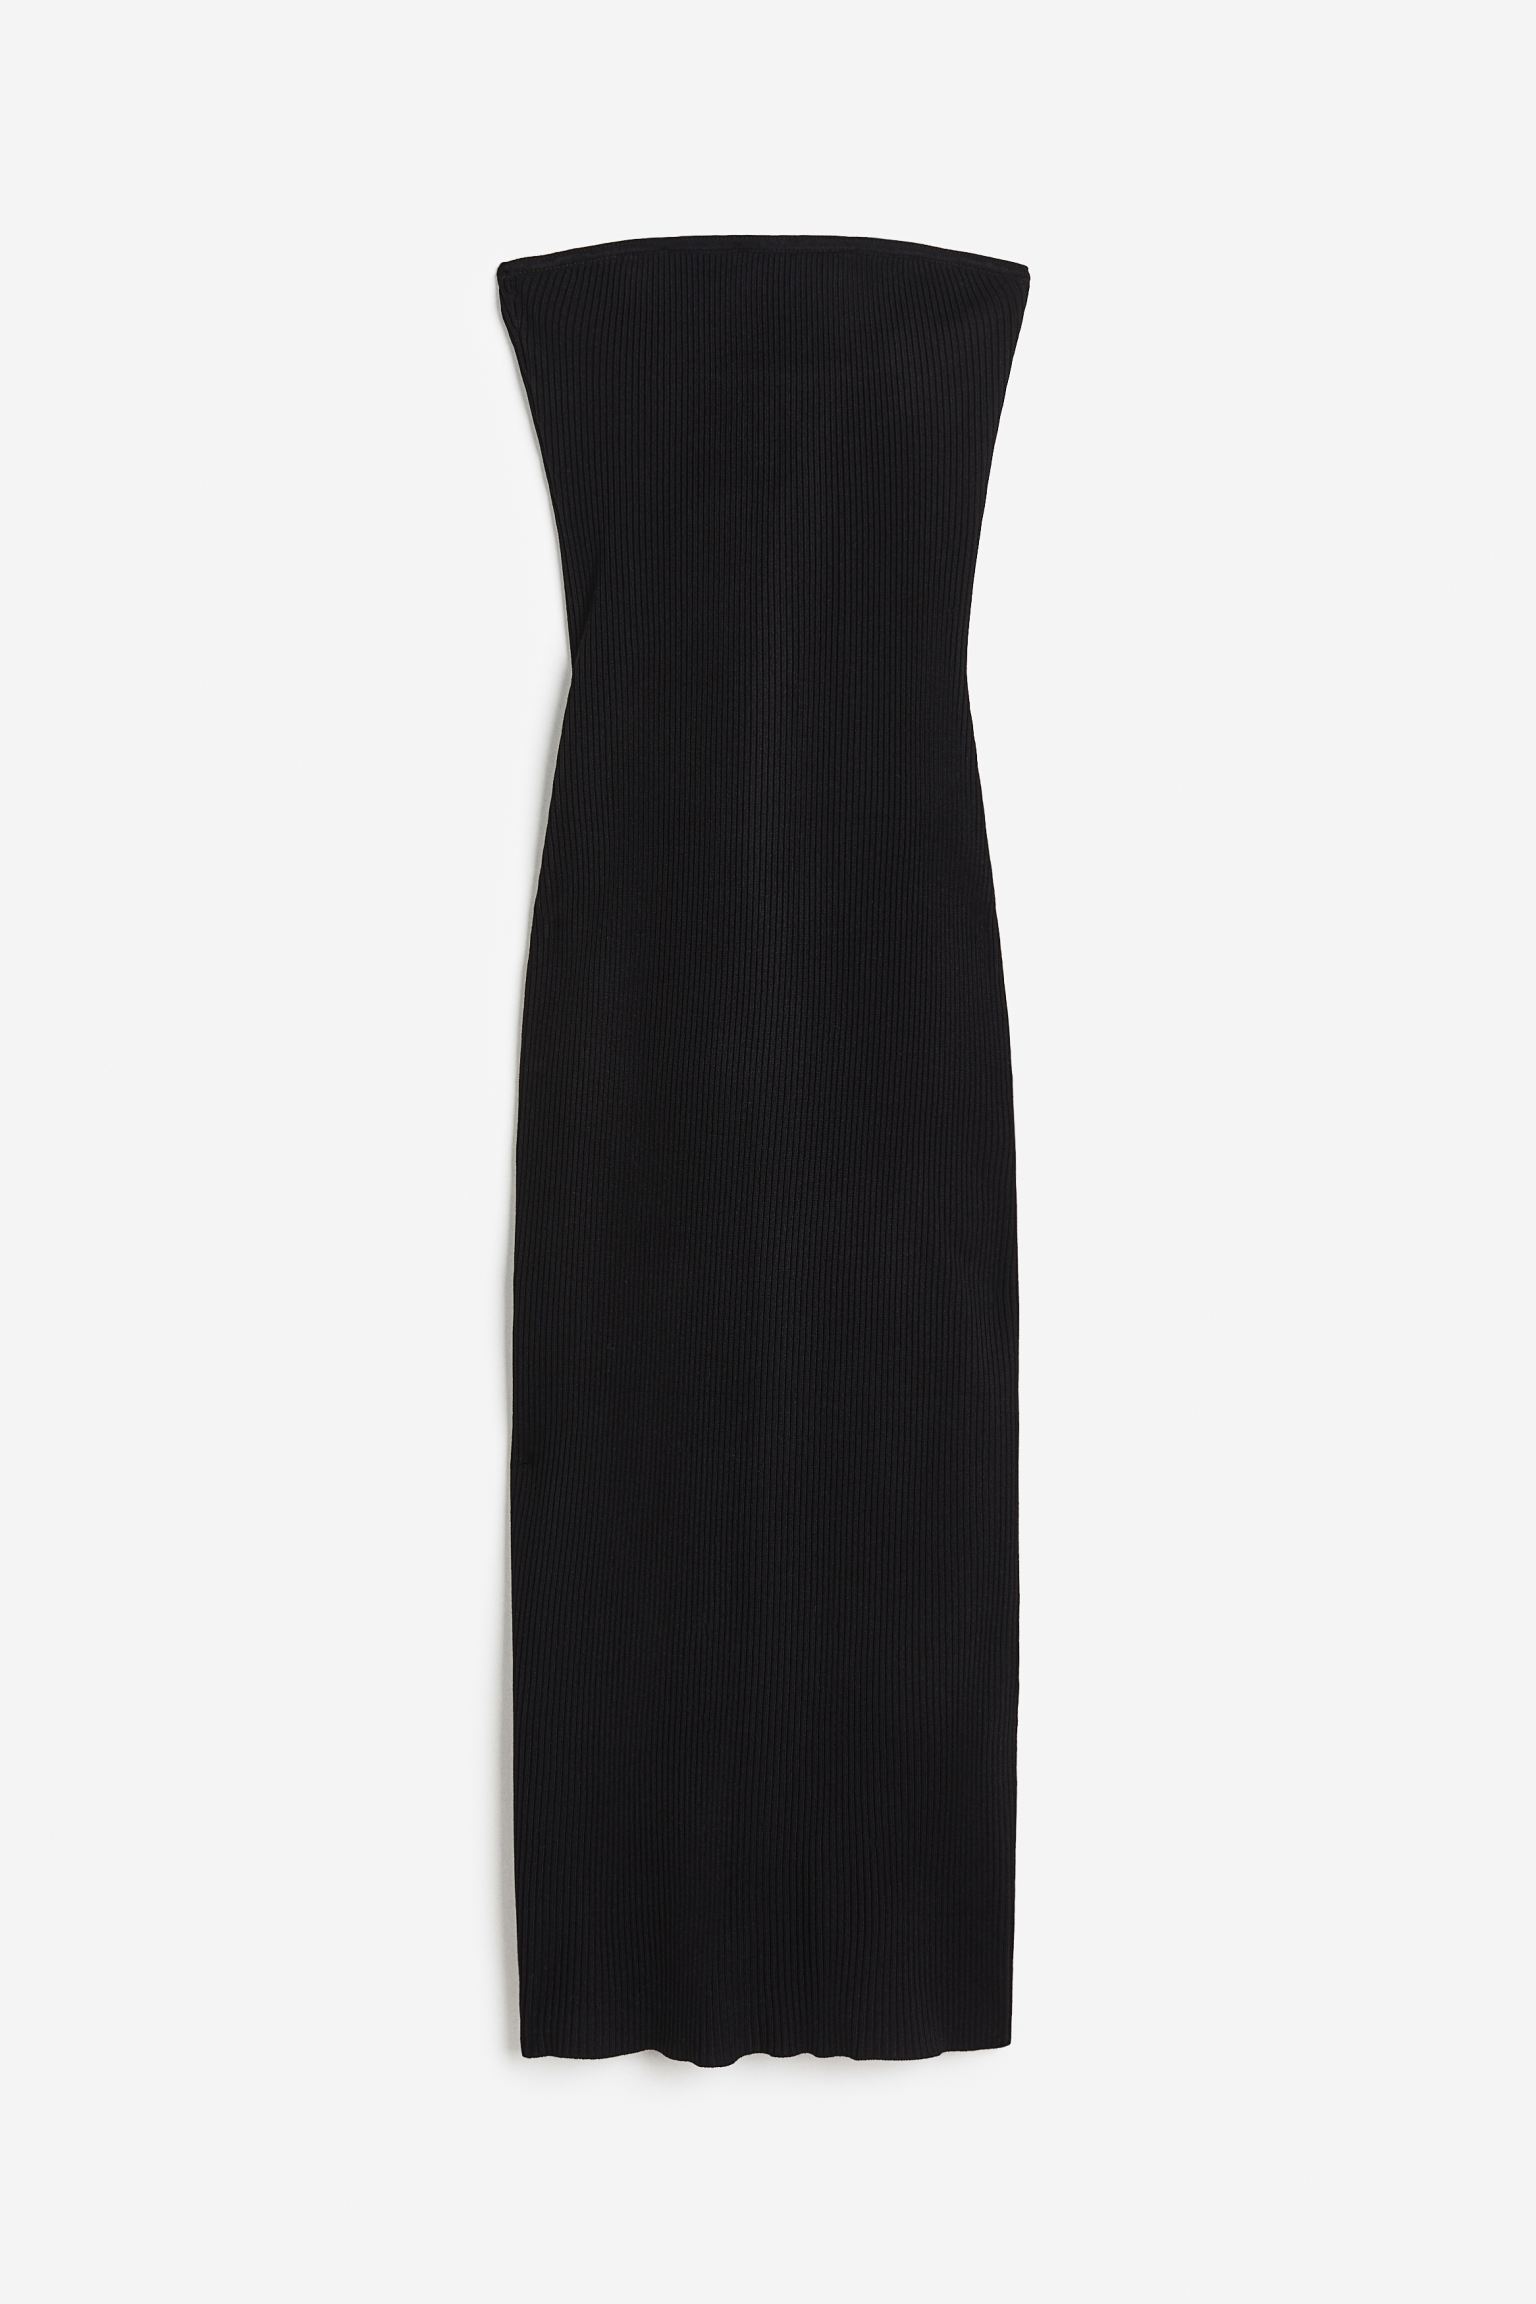 Платье женское H&M 1155541004 черное L (доставка из-за рубежа)